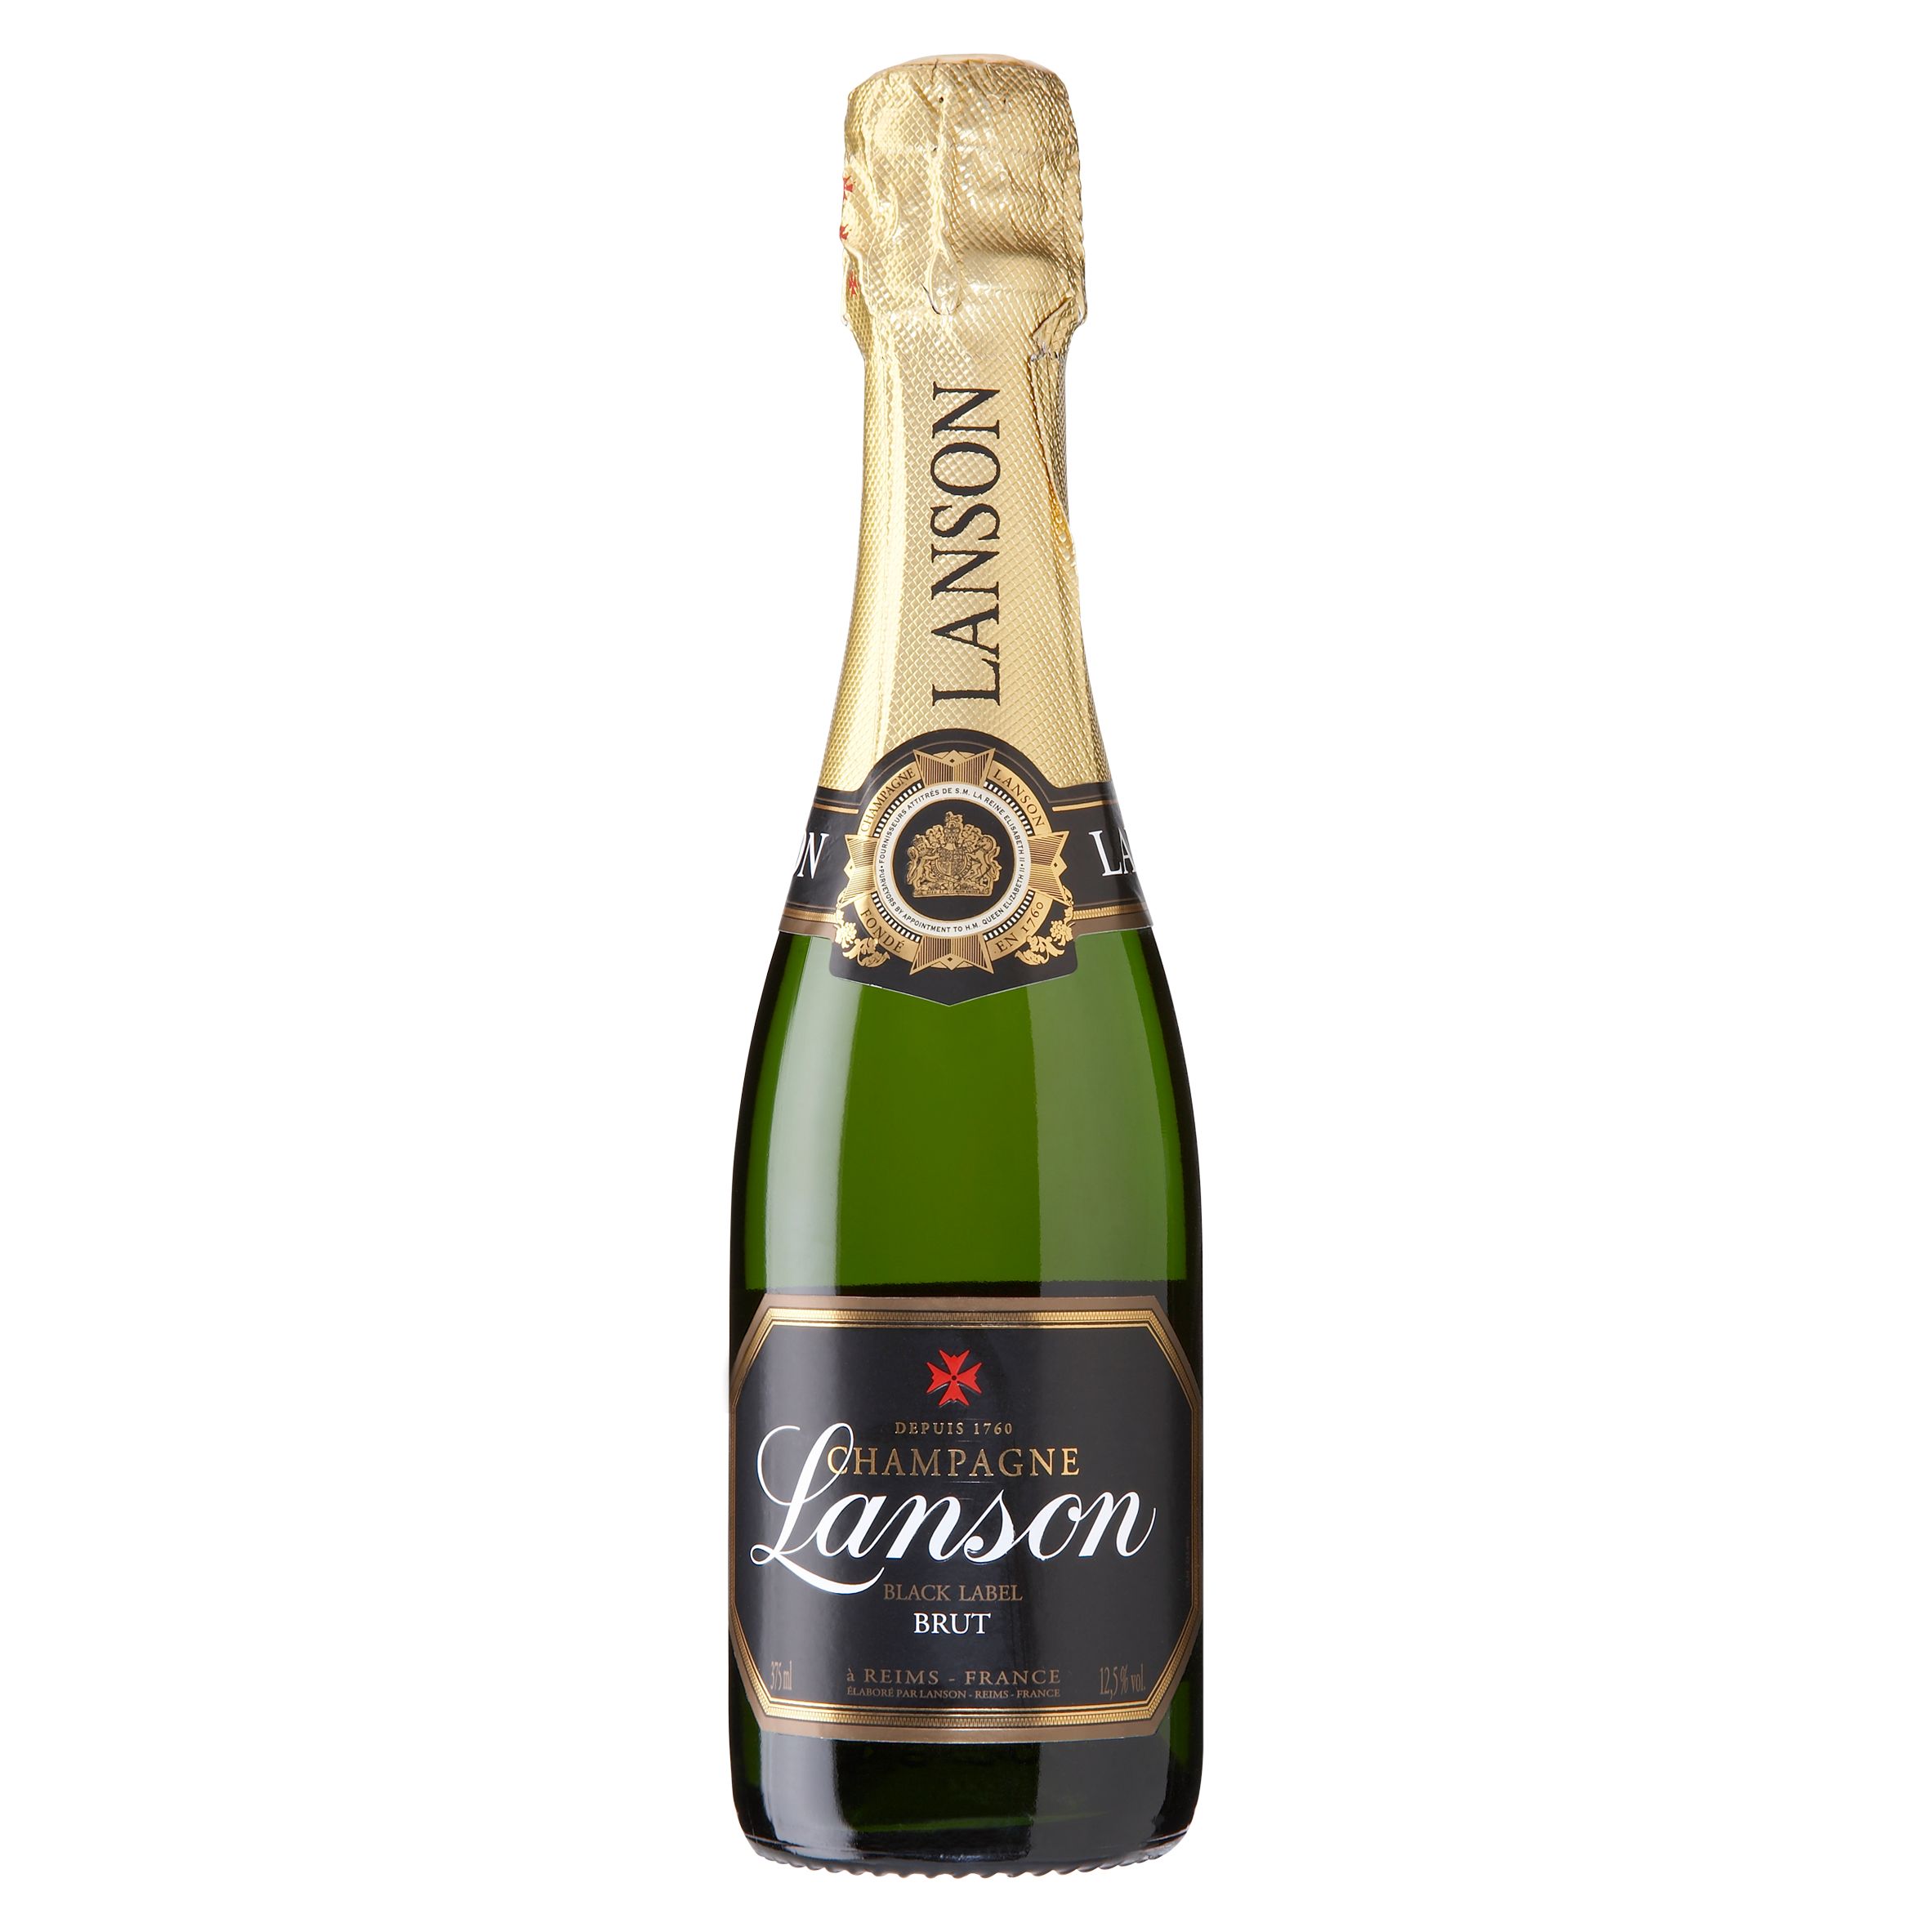 Lanson Black Label Brut NV Champagne, France, 37.5cl (half bottle) at John Lewis